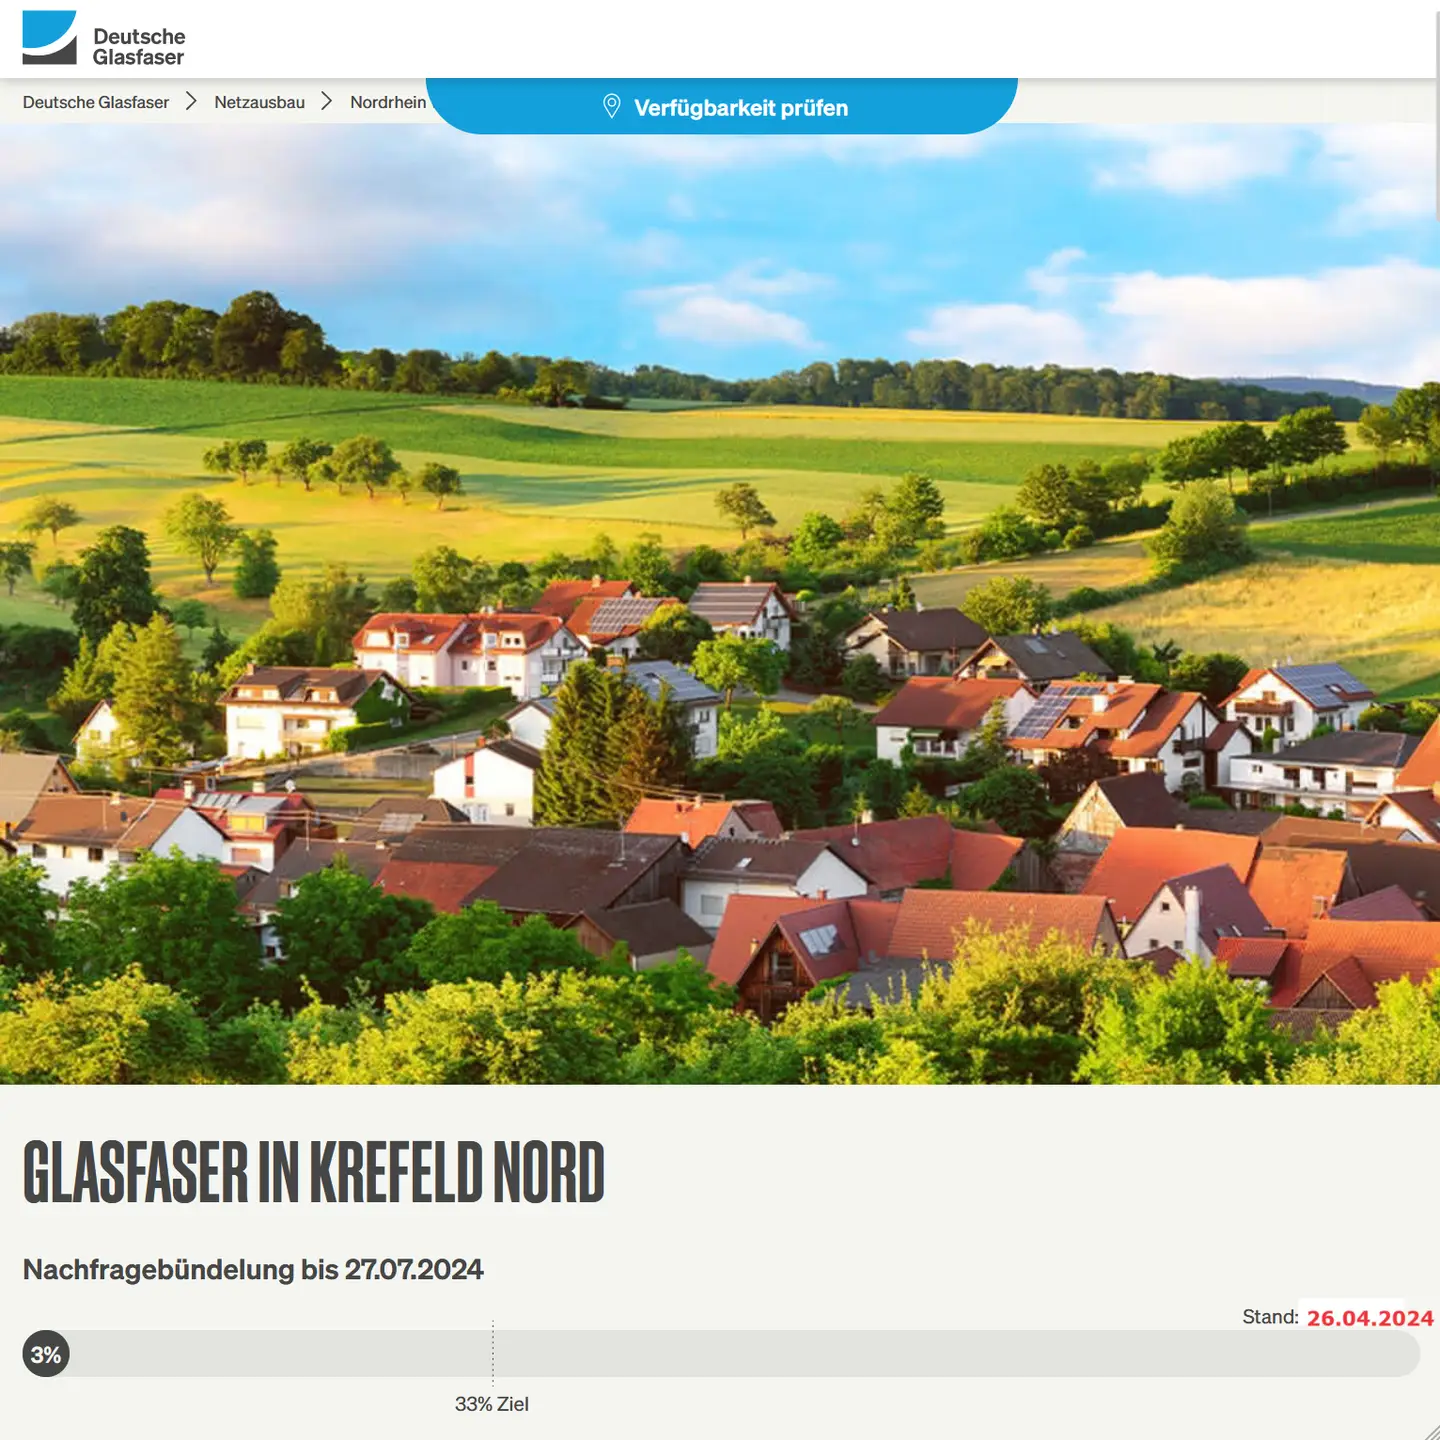 Screenshot von "Deutsche Glasfaser", oben DG Logo, ein Landschaftsbild, Schriftzüge "Glasfaser in Krefeld-Nord", Nachfragebündelung bis 27.7.2024, Anzeige des aktuellen Stand: 3%